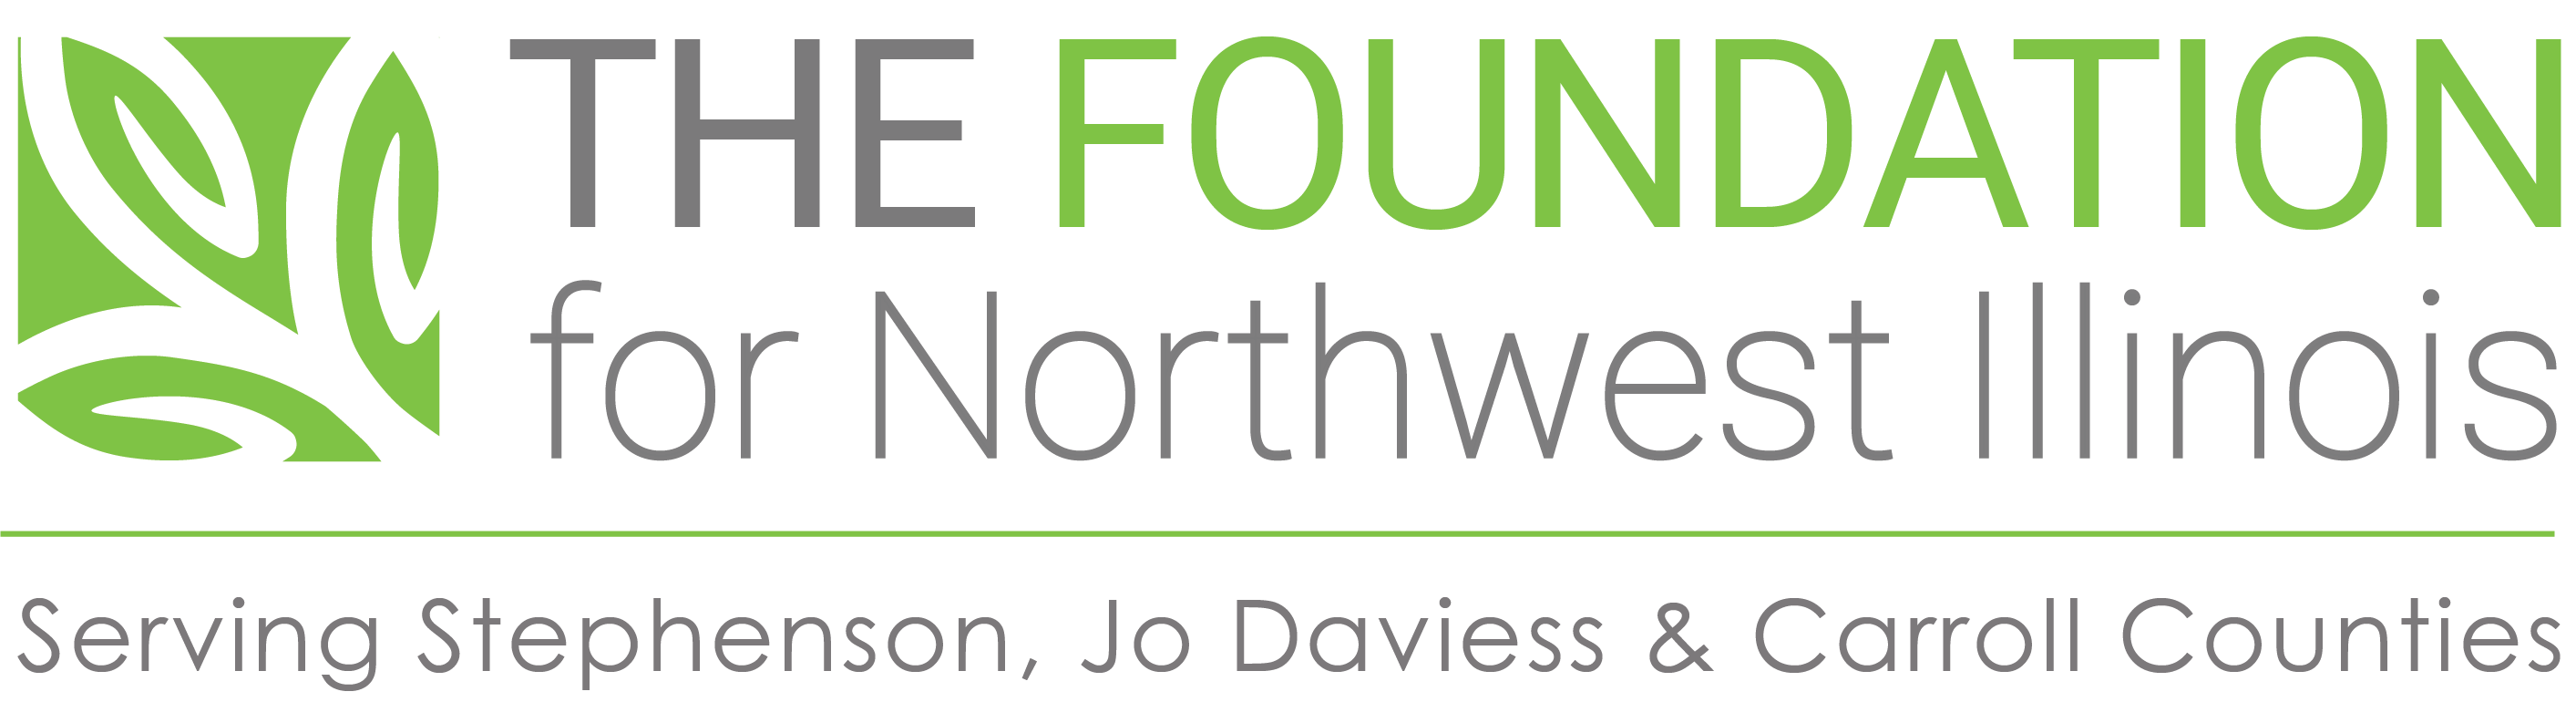 The Foundation for Northwest Illinois